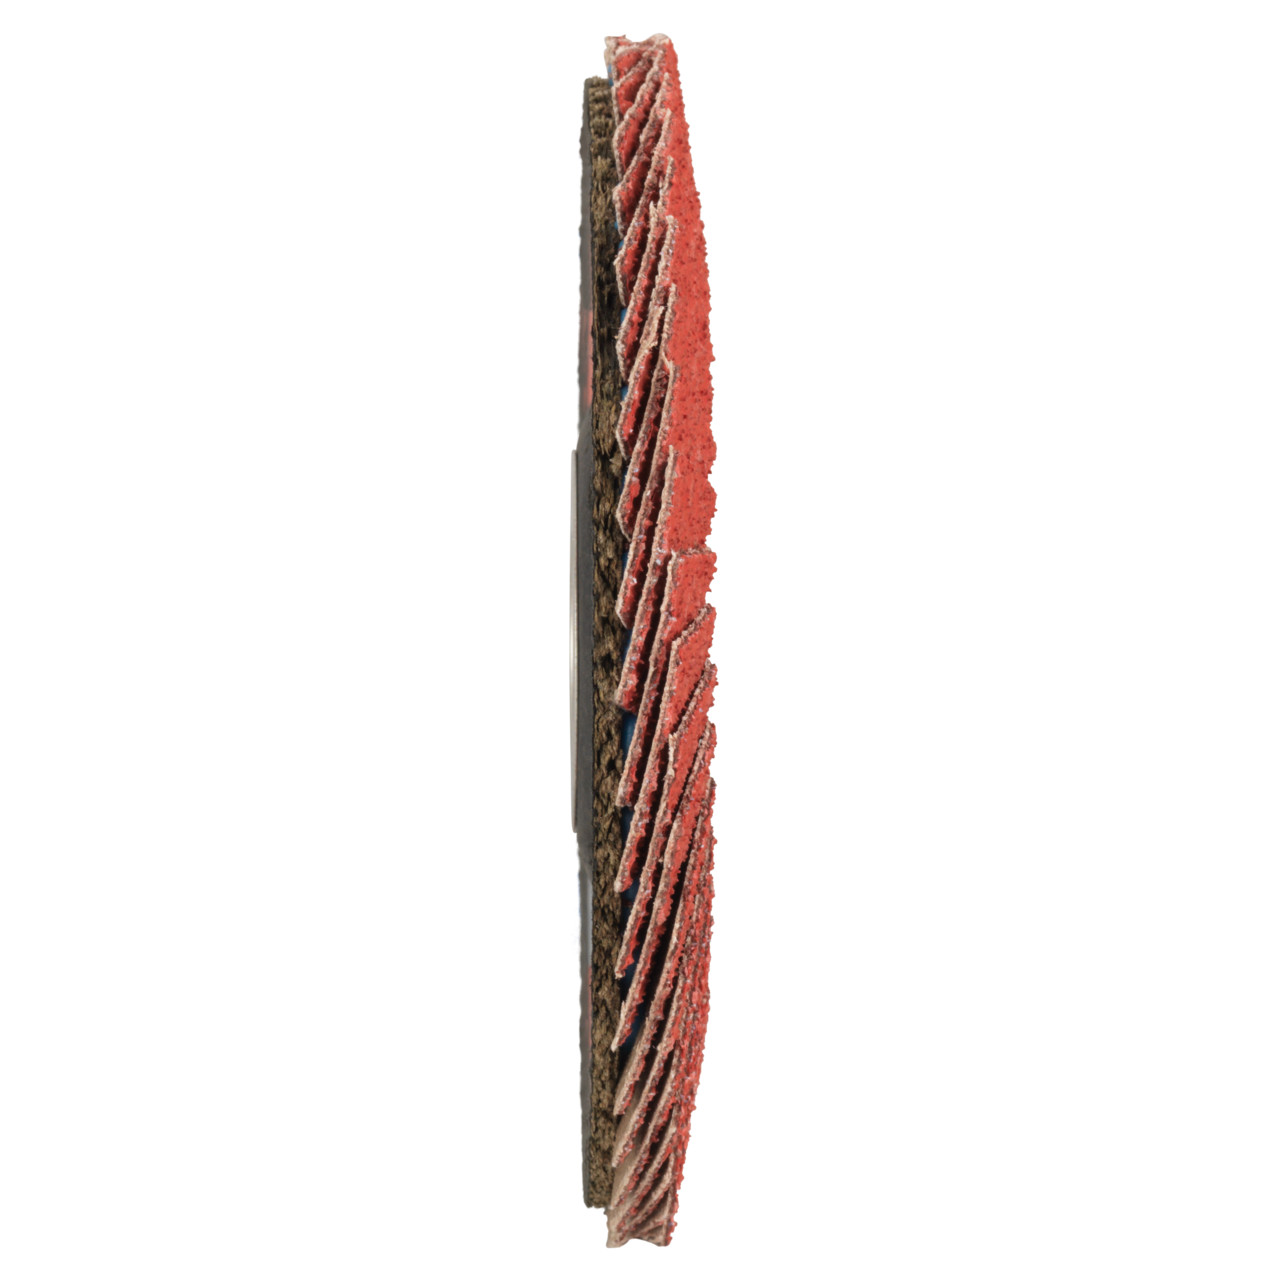 Tyrolit Arandela dentada DxH 125x22,23 CERÁMICA para acero inoxidable, P80, forma: 27A - diseño acodado (diseño del cuerpo portador de fibra de vidrio), Art. 34166671